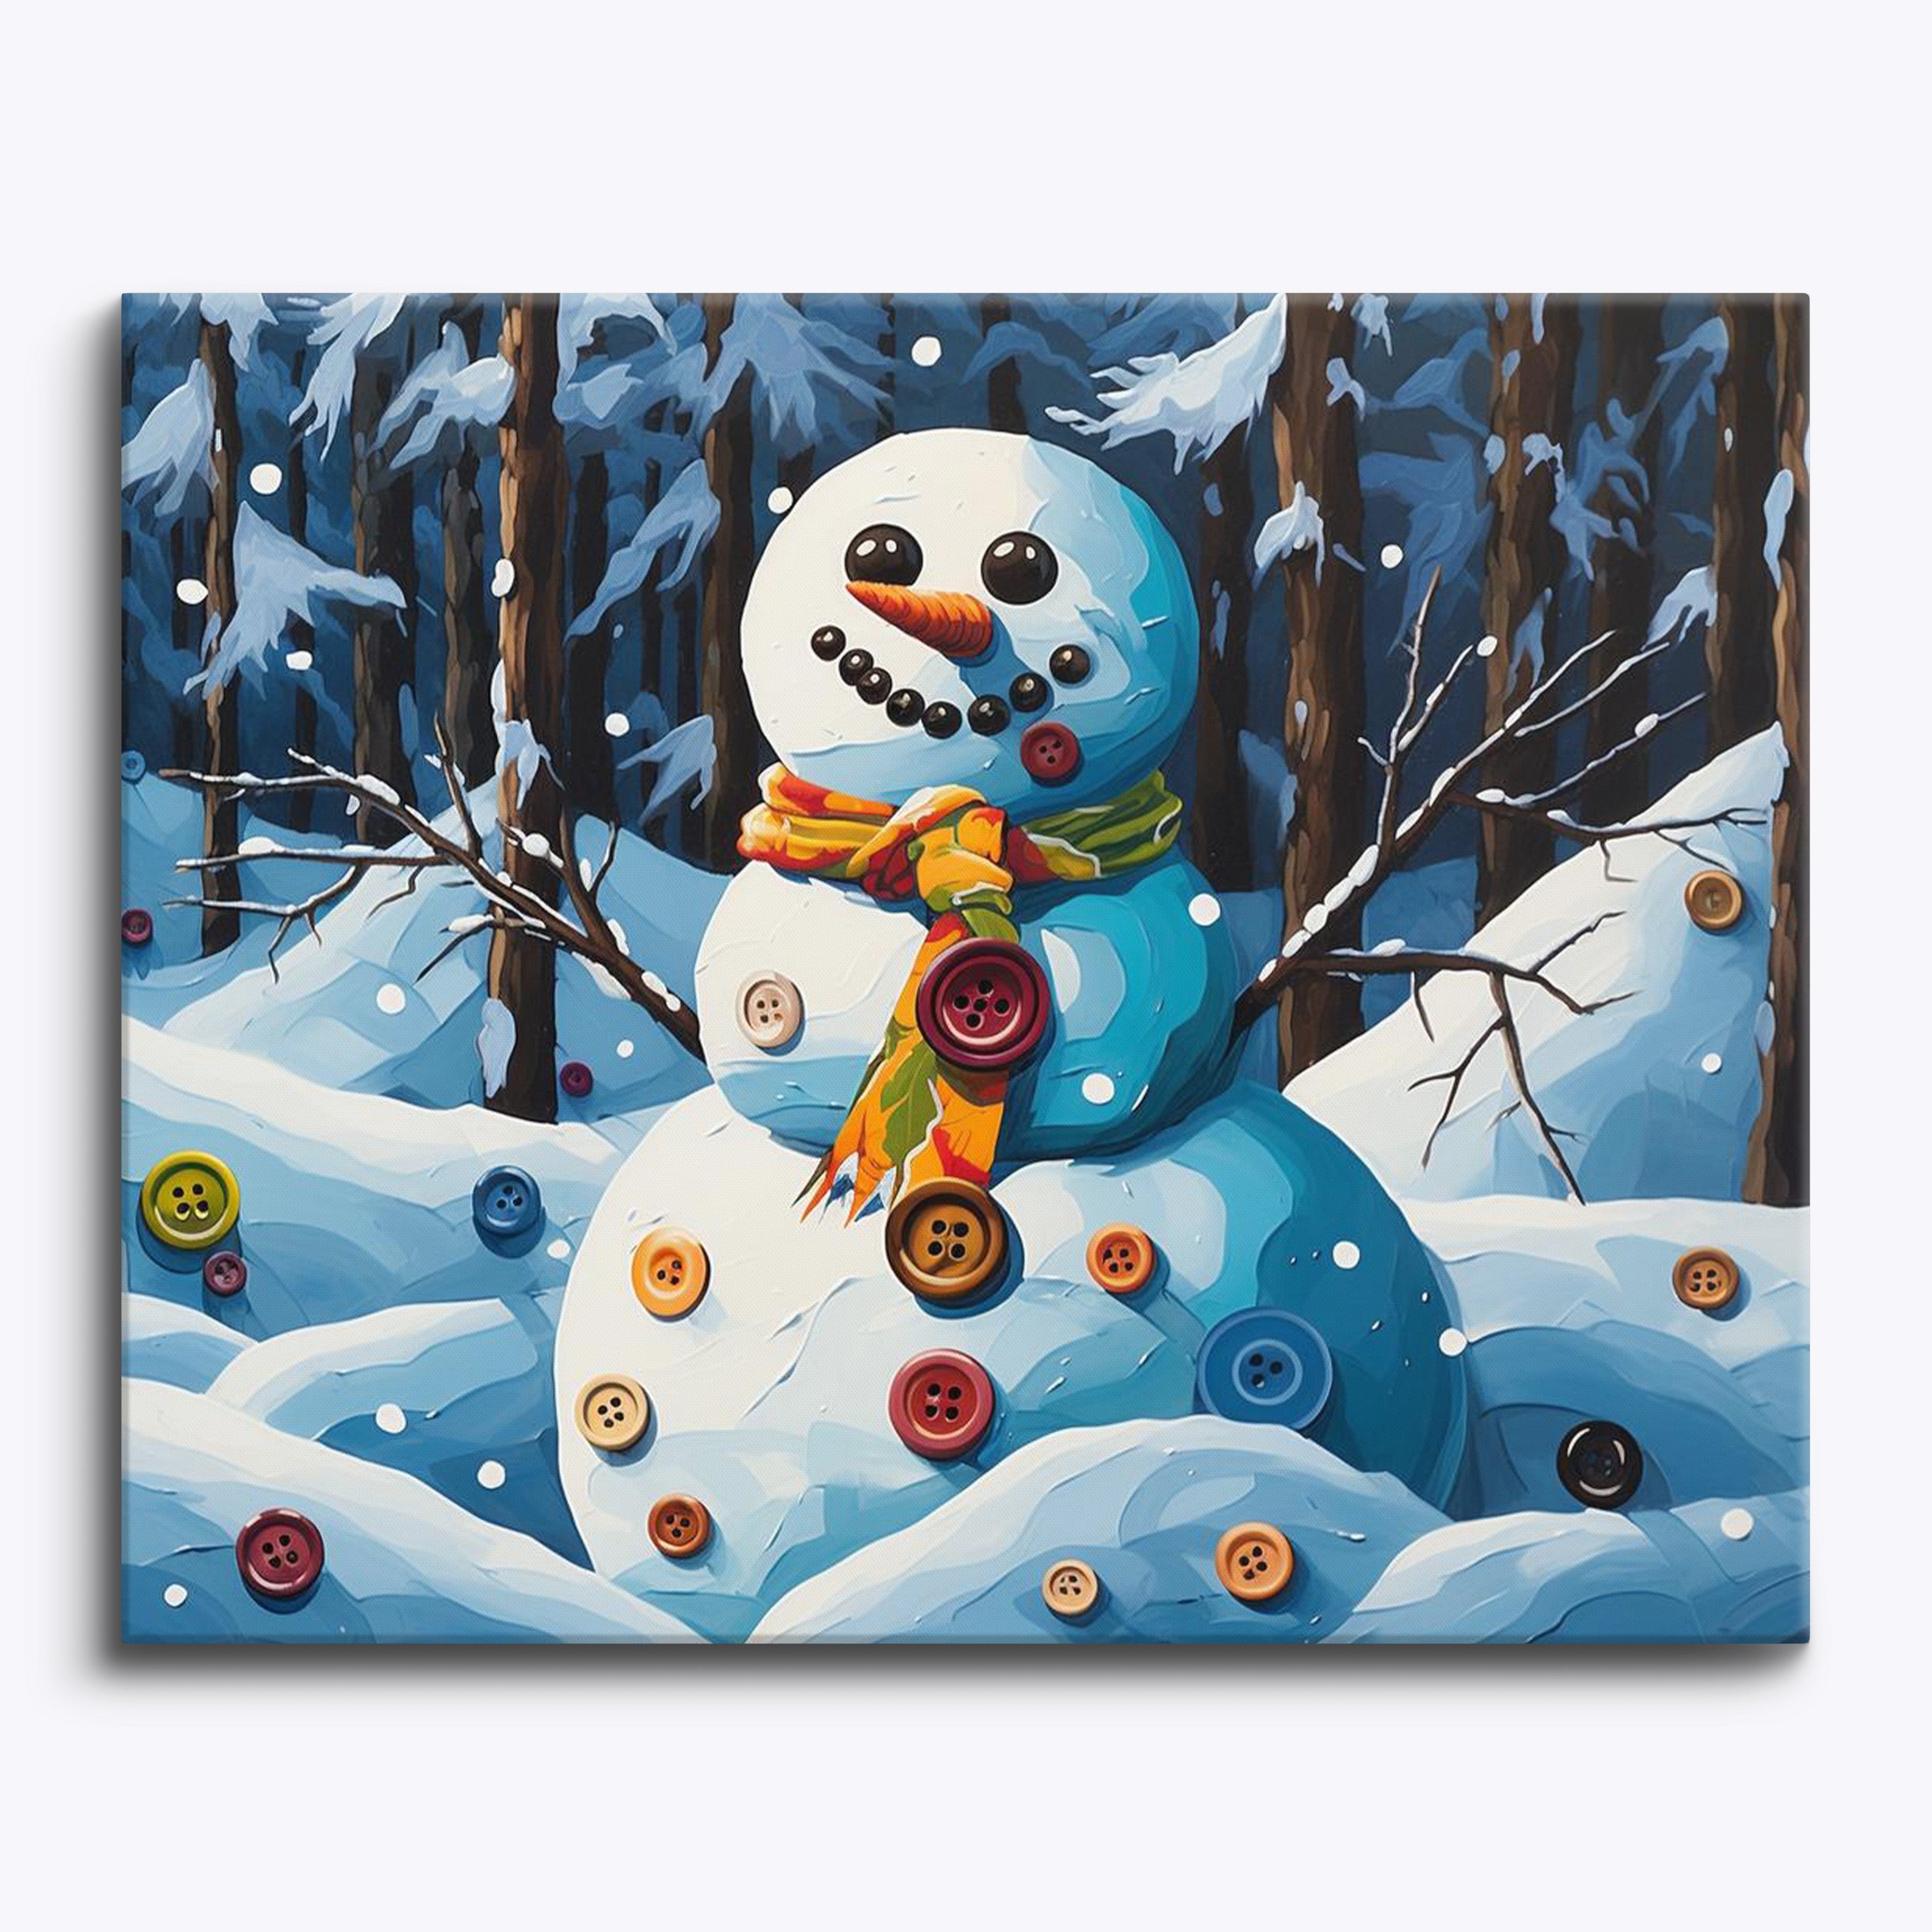 Abstracte sneeuwpop met knoop